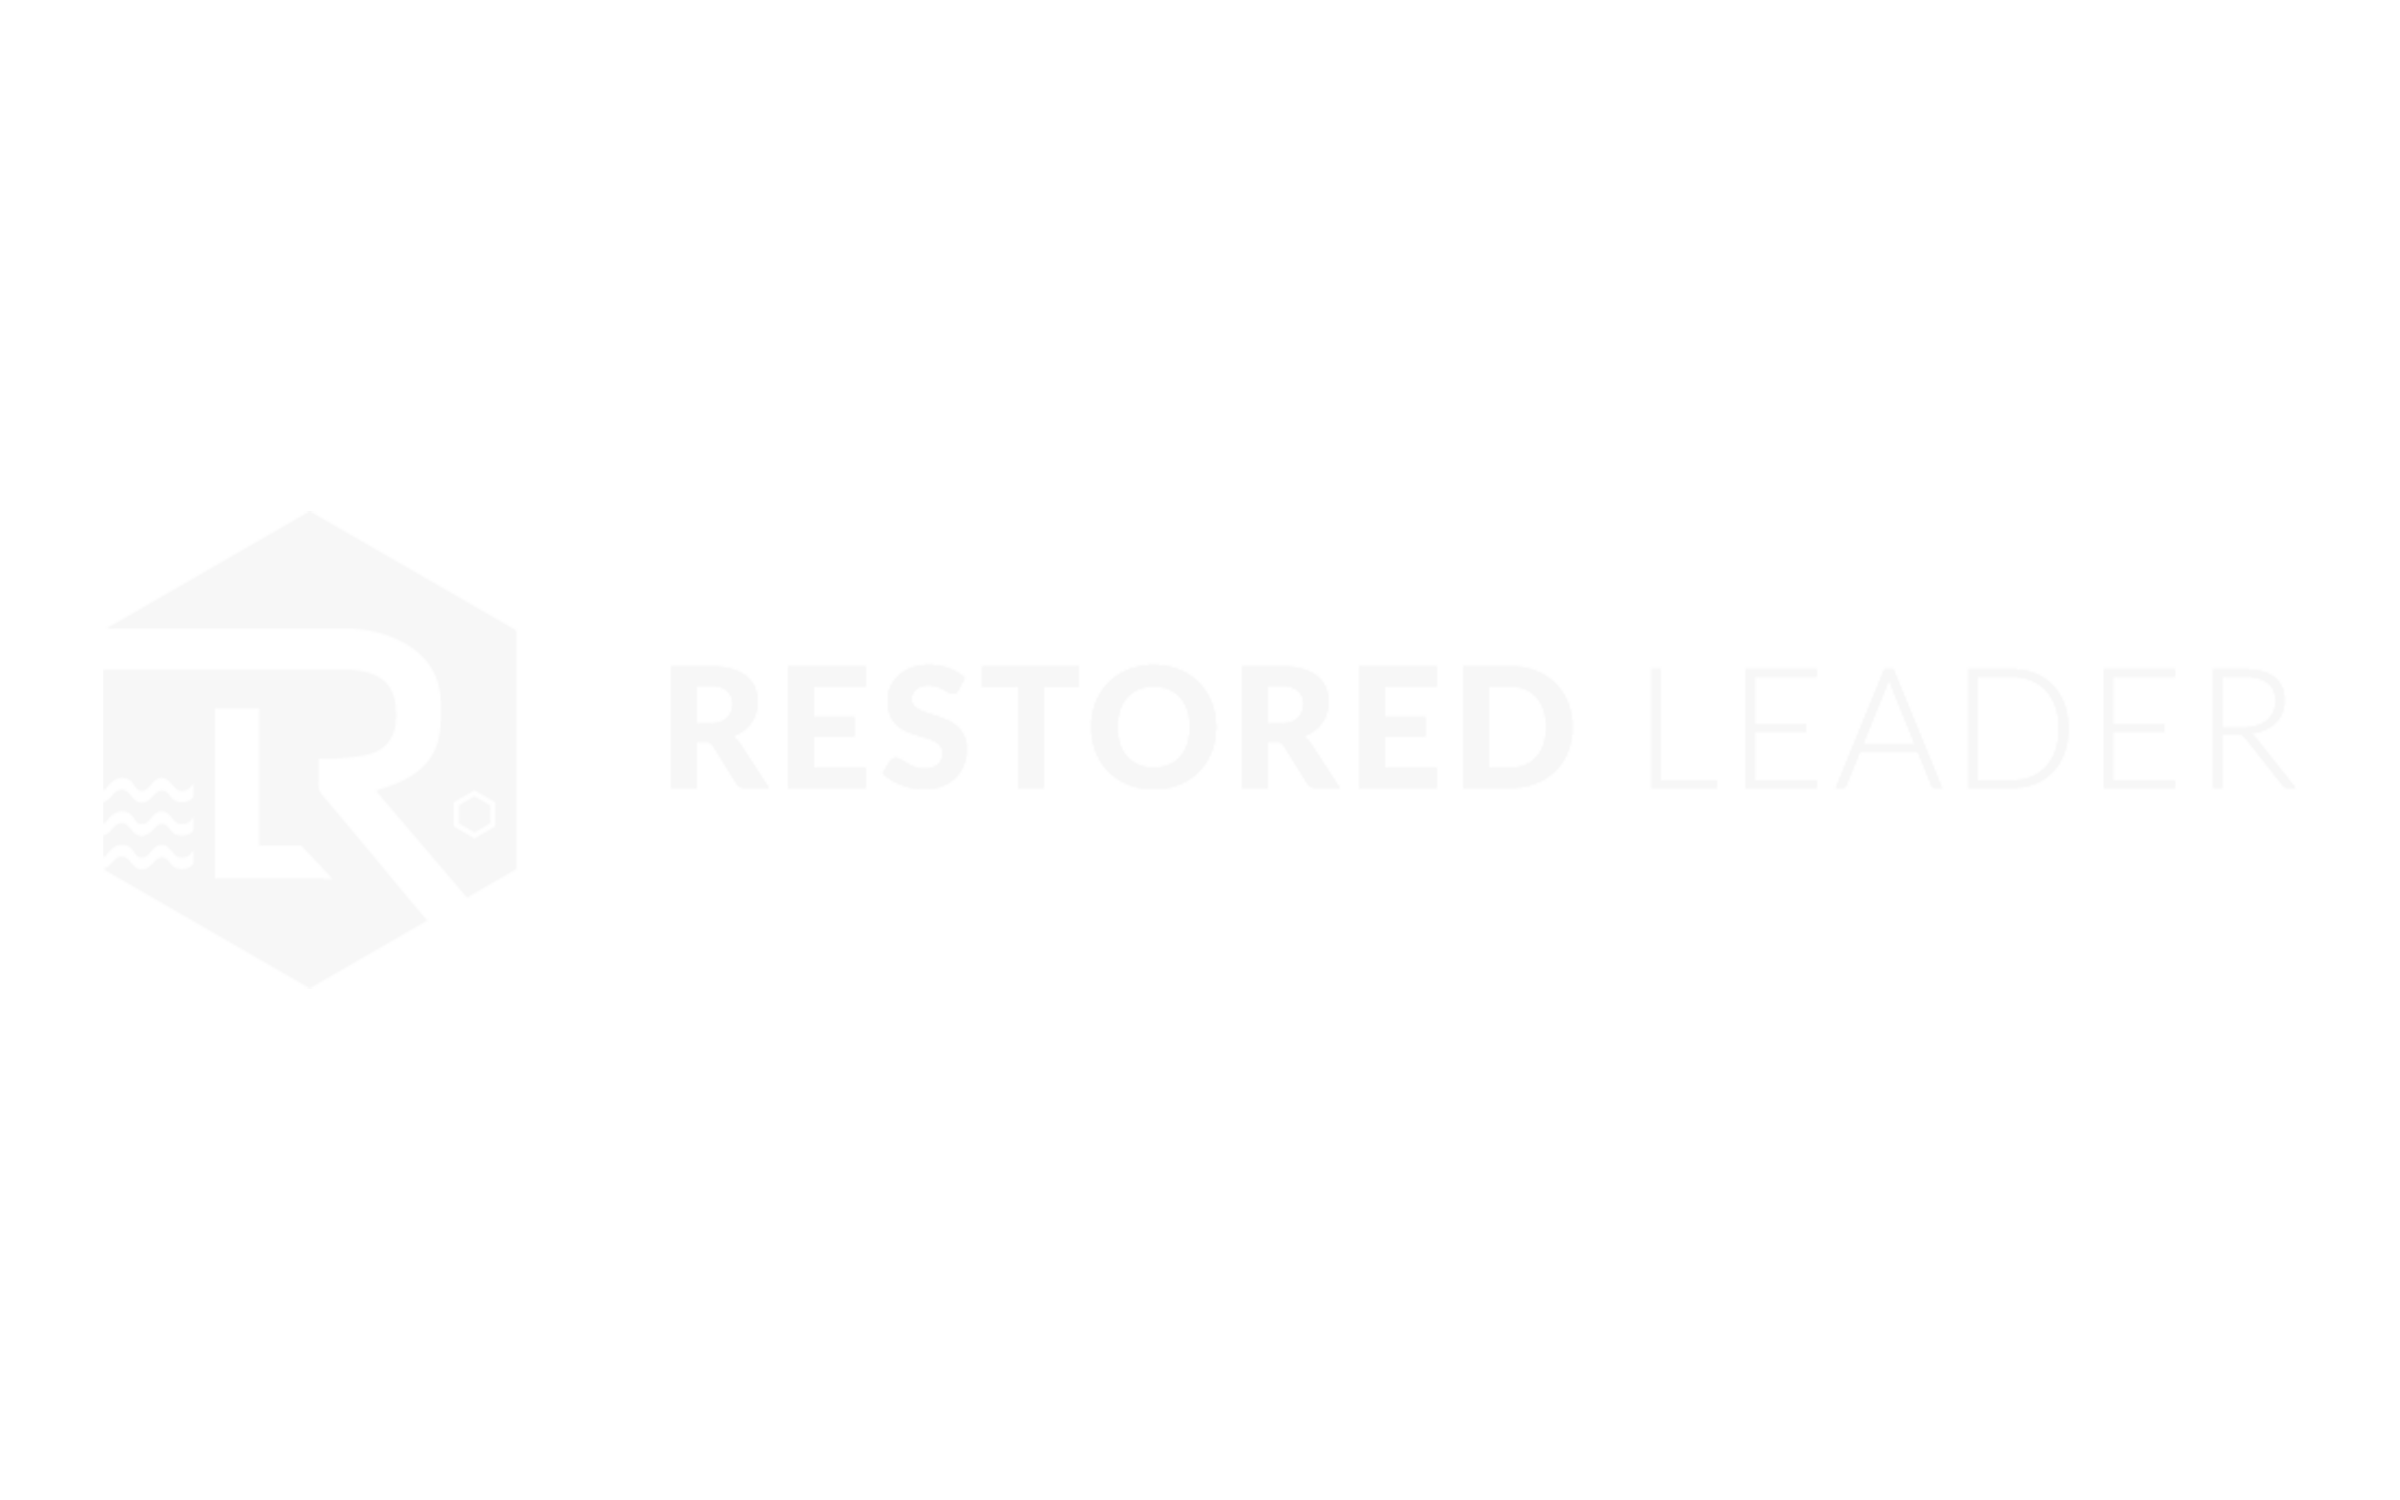 Restored Leader